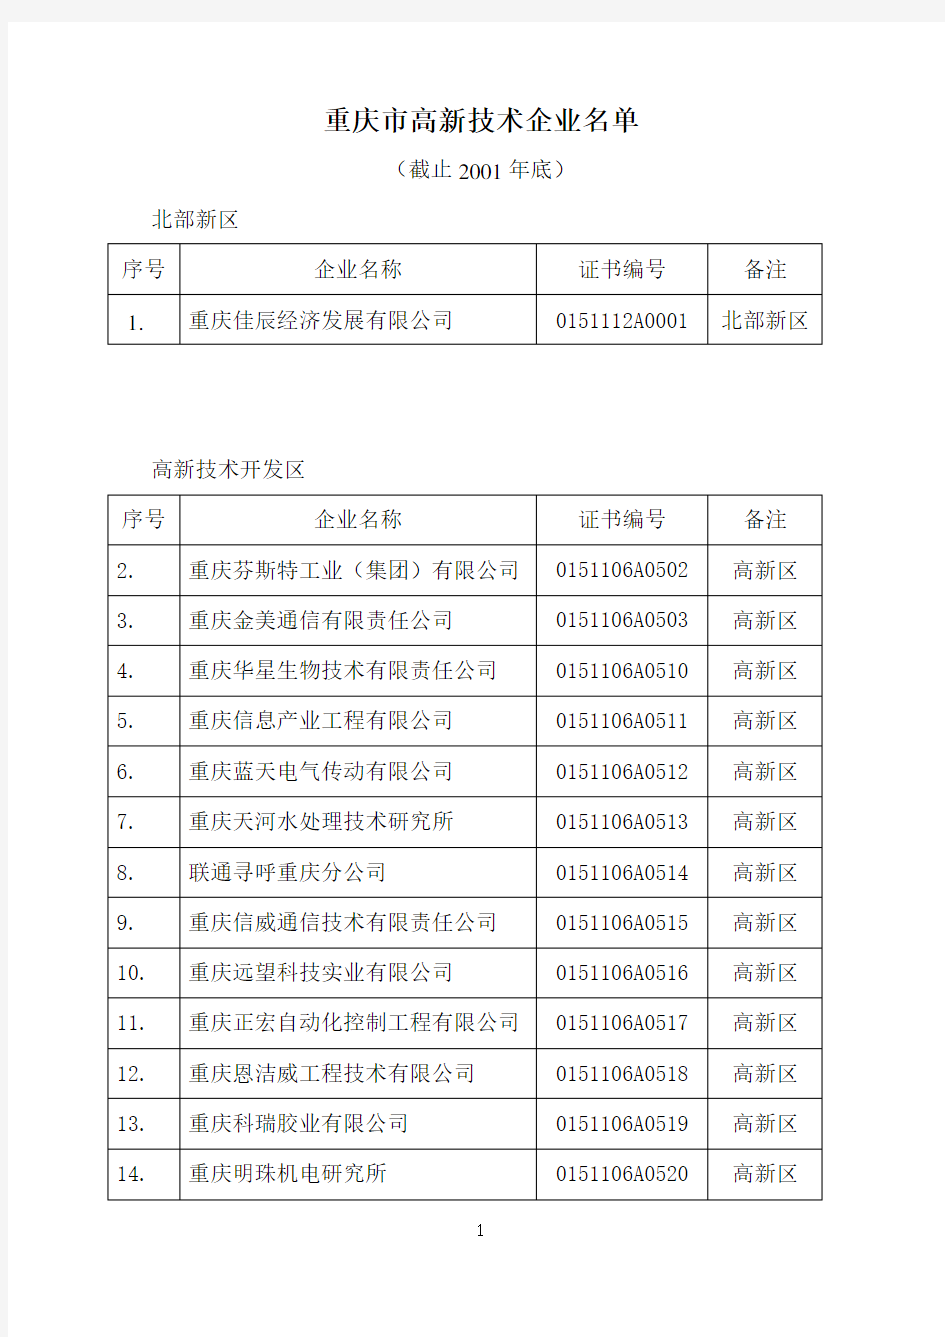 重庆市高新技术企业名单